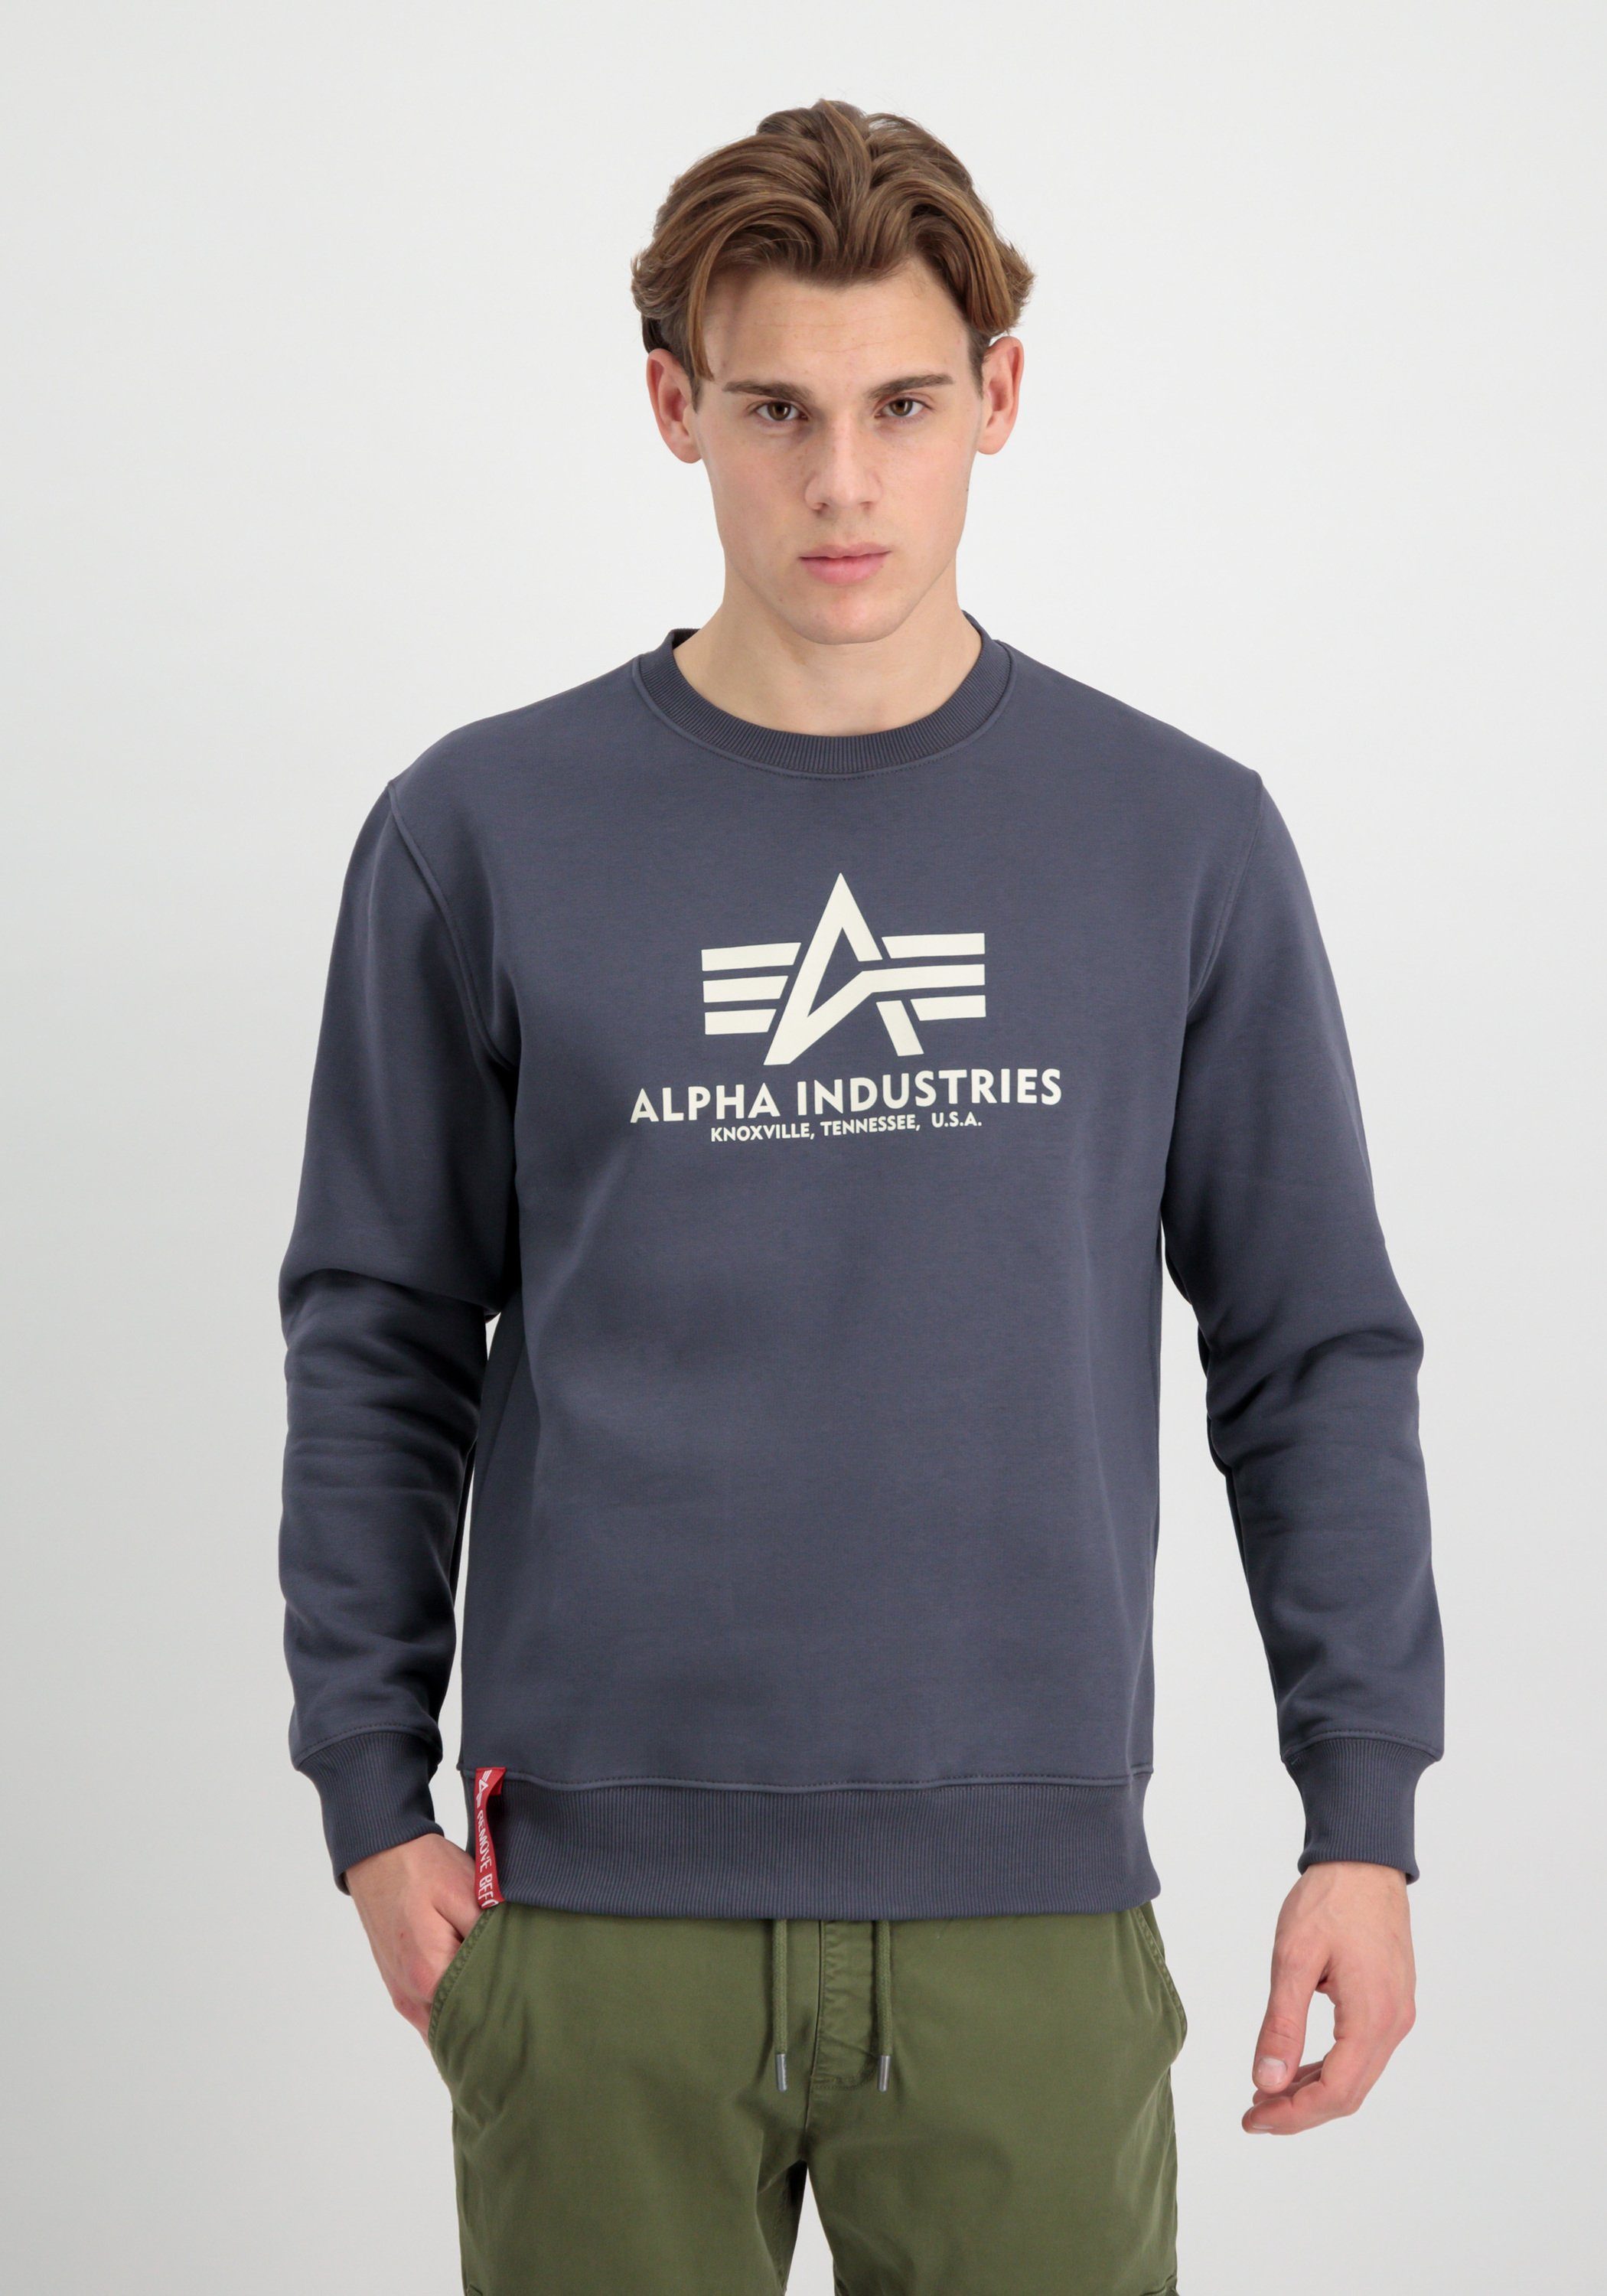 - Industries Sweatshirts Alpha greyblack Alpha Basic Industries Sweater Men Sweater